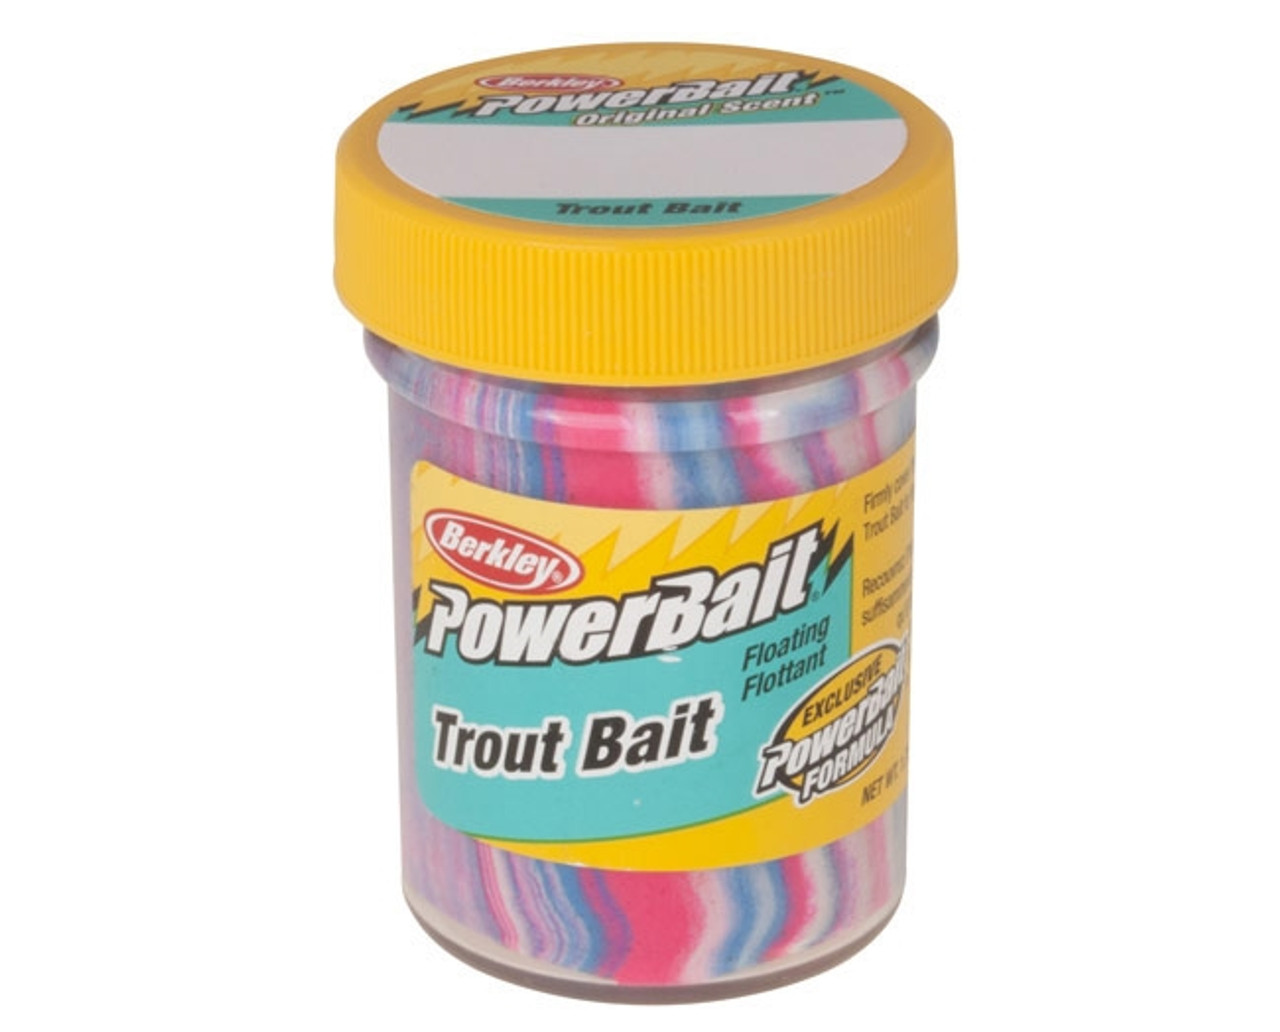 Berkley Powerbait Trout Bait, Trout dough bait